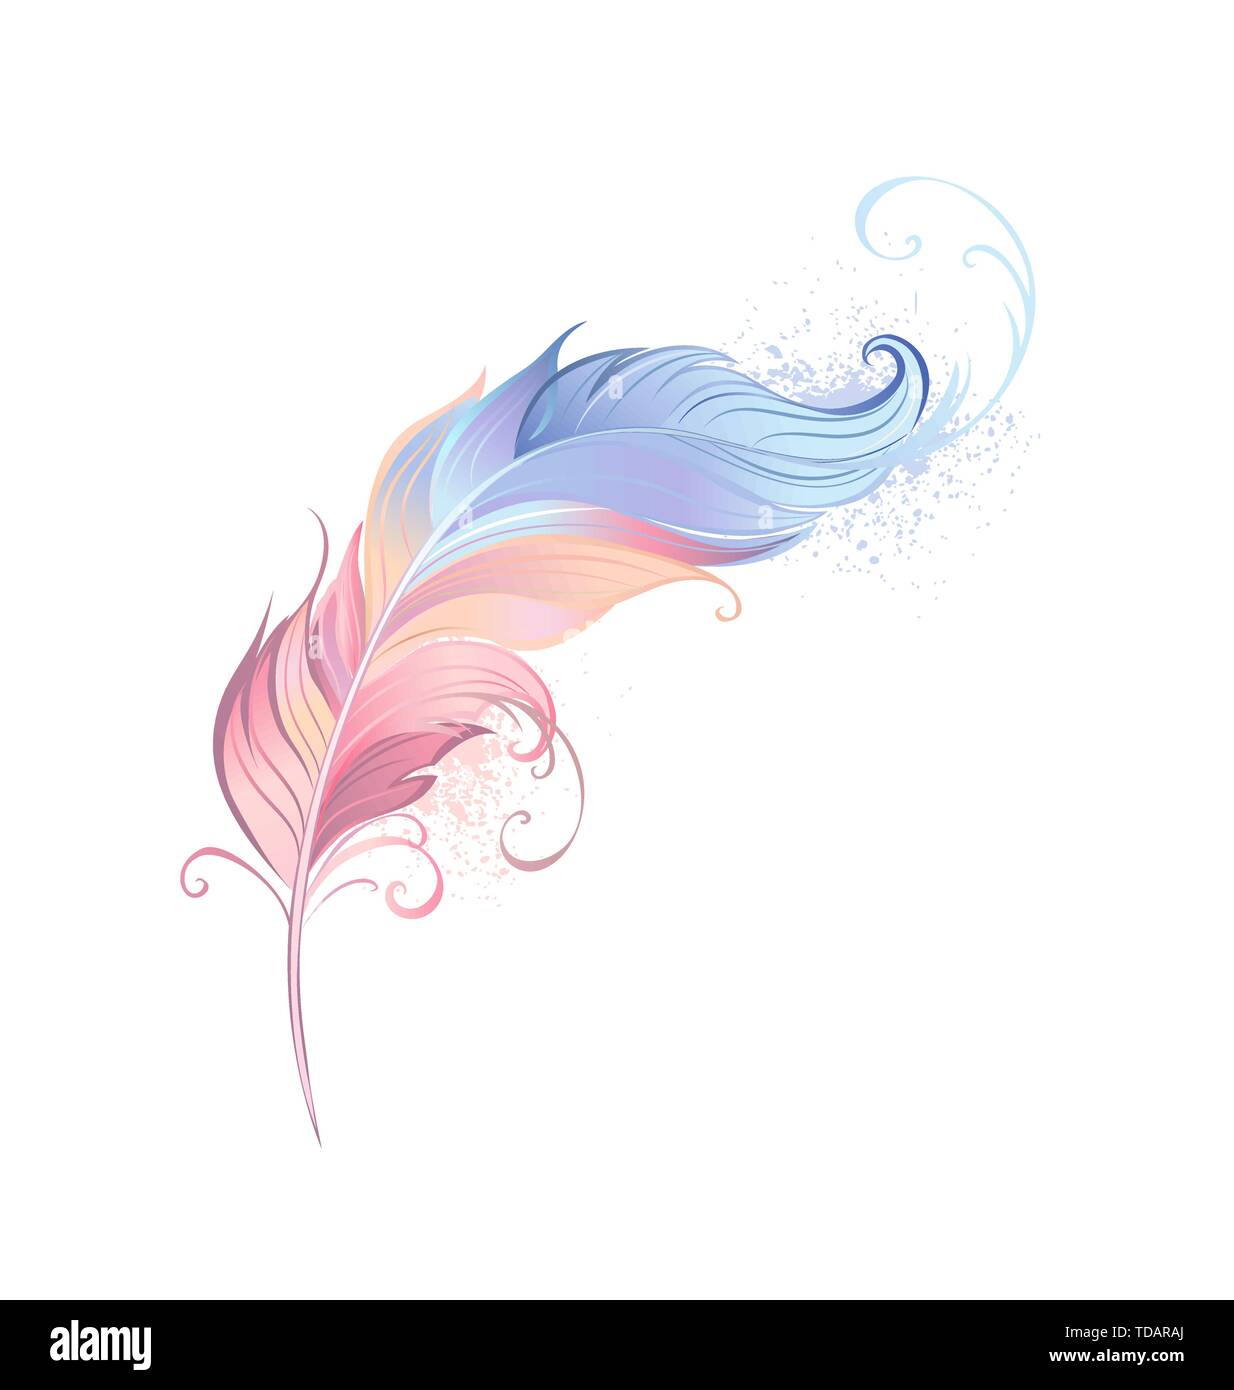 Bella feather dipinta in rosa e blu pastello su sfondo bianco. Illustrazione Vettoriale